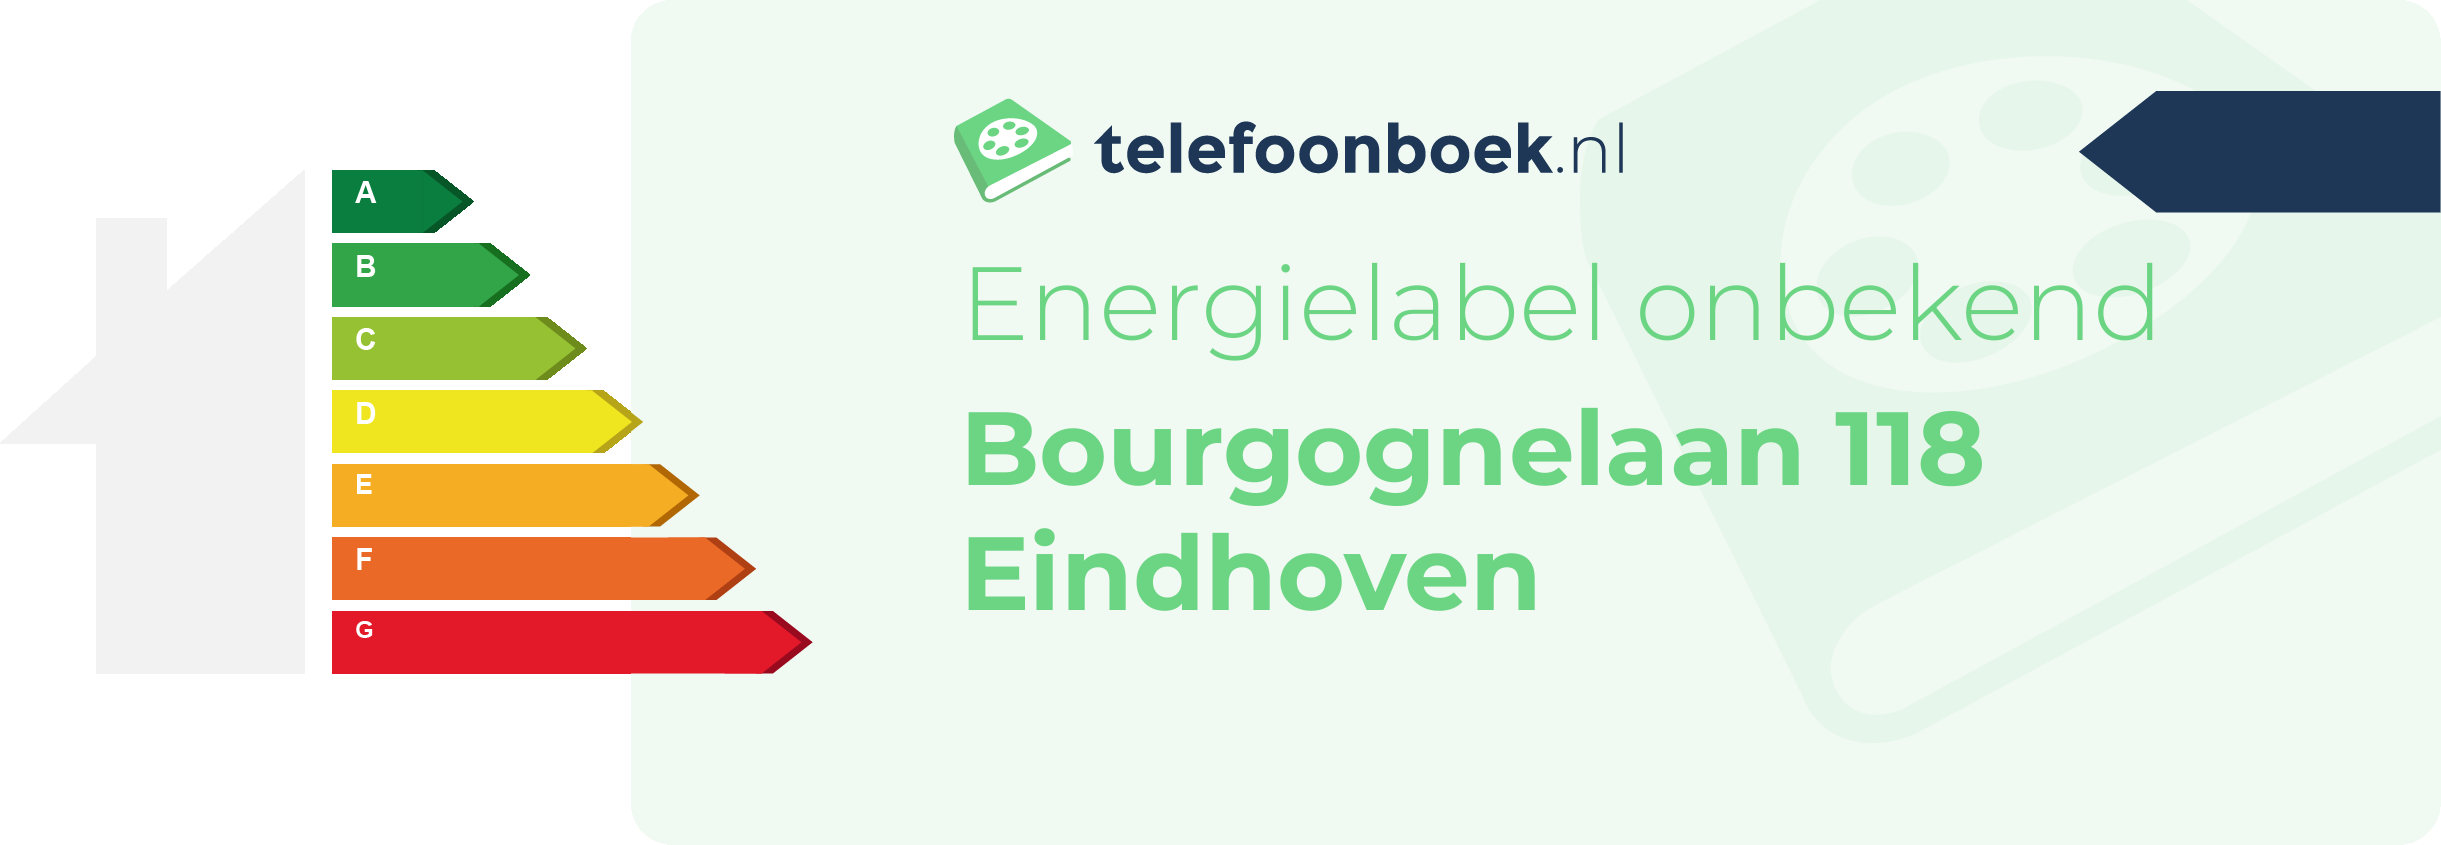 Energielabel Bourgognelaan 118 Eindhoven